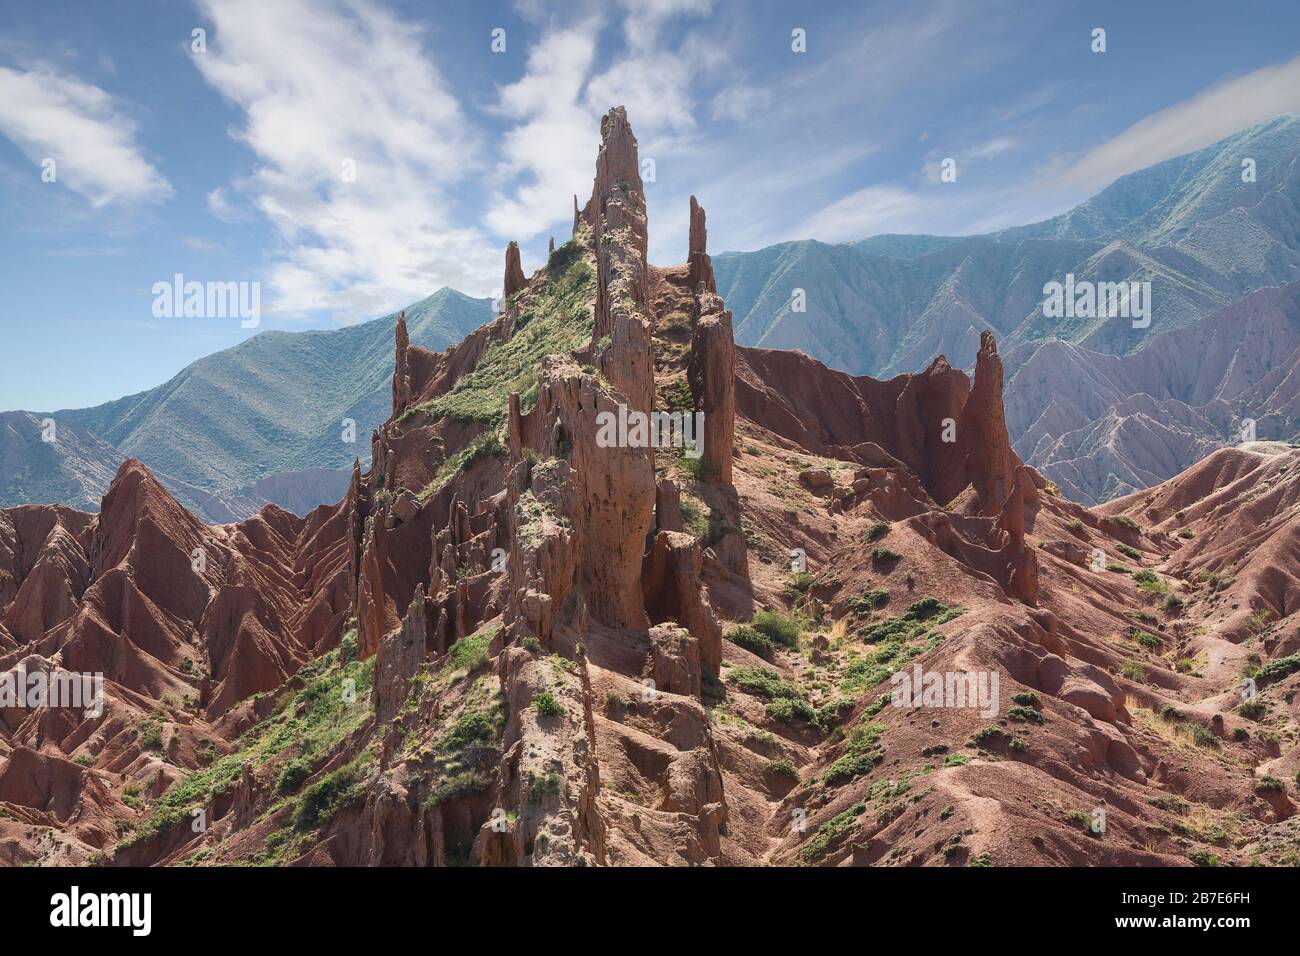 Formaciones rocosas conocidas como el Castillo de Fairy Tale, cerca de la ciudad de Kaji Say, Kirguistán Foto de stock